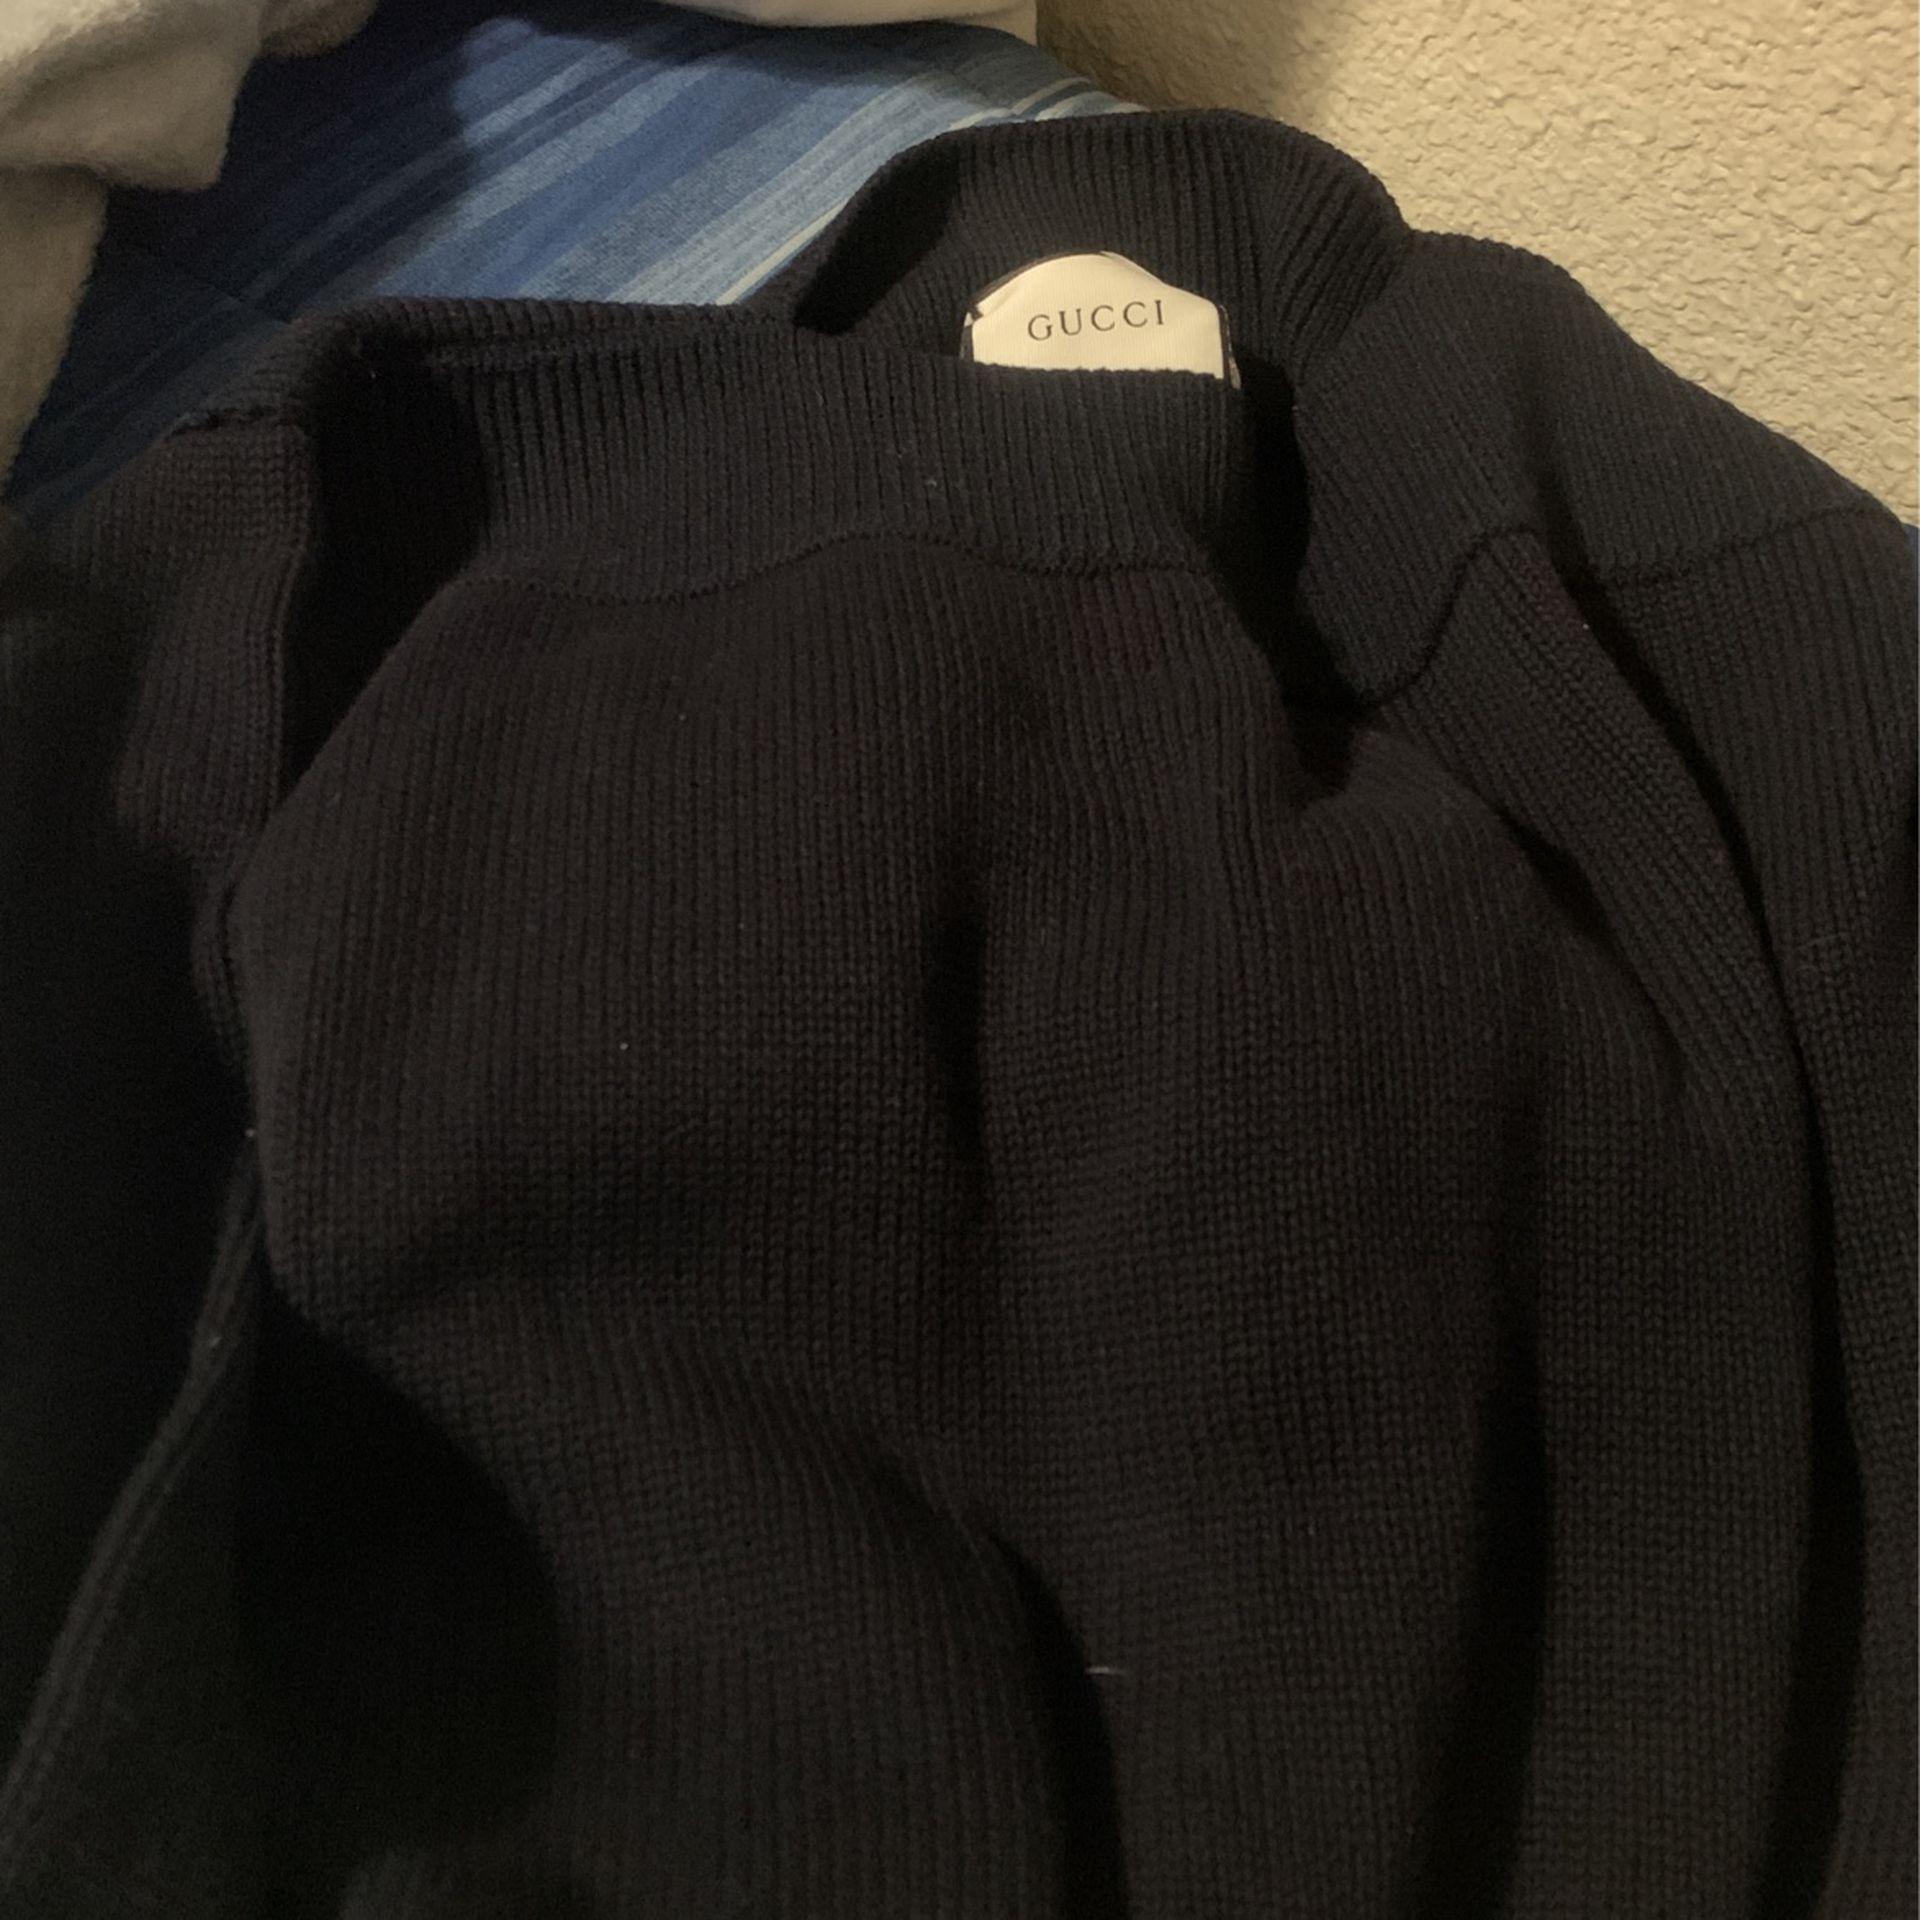 Preloved Men's Sweater - Black - L